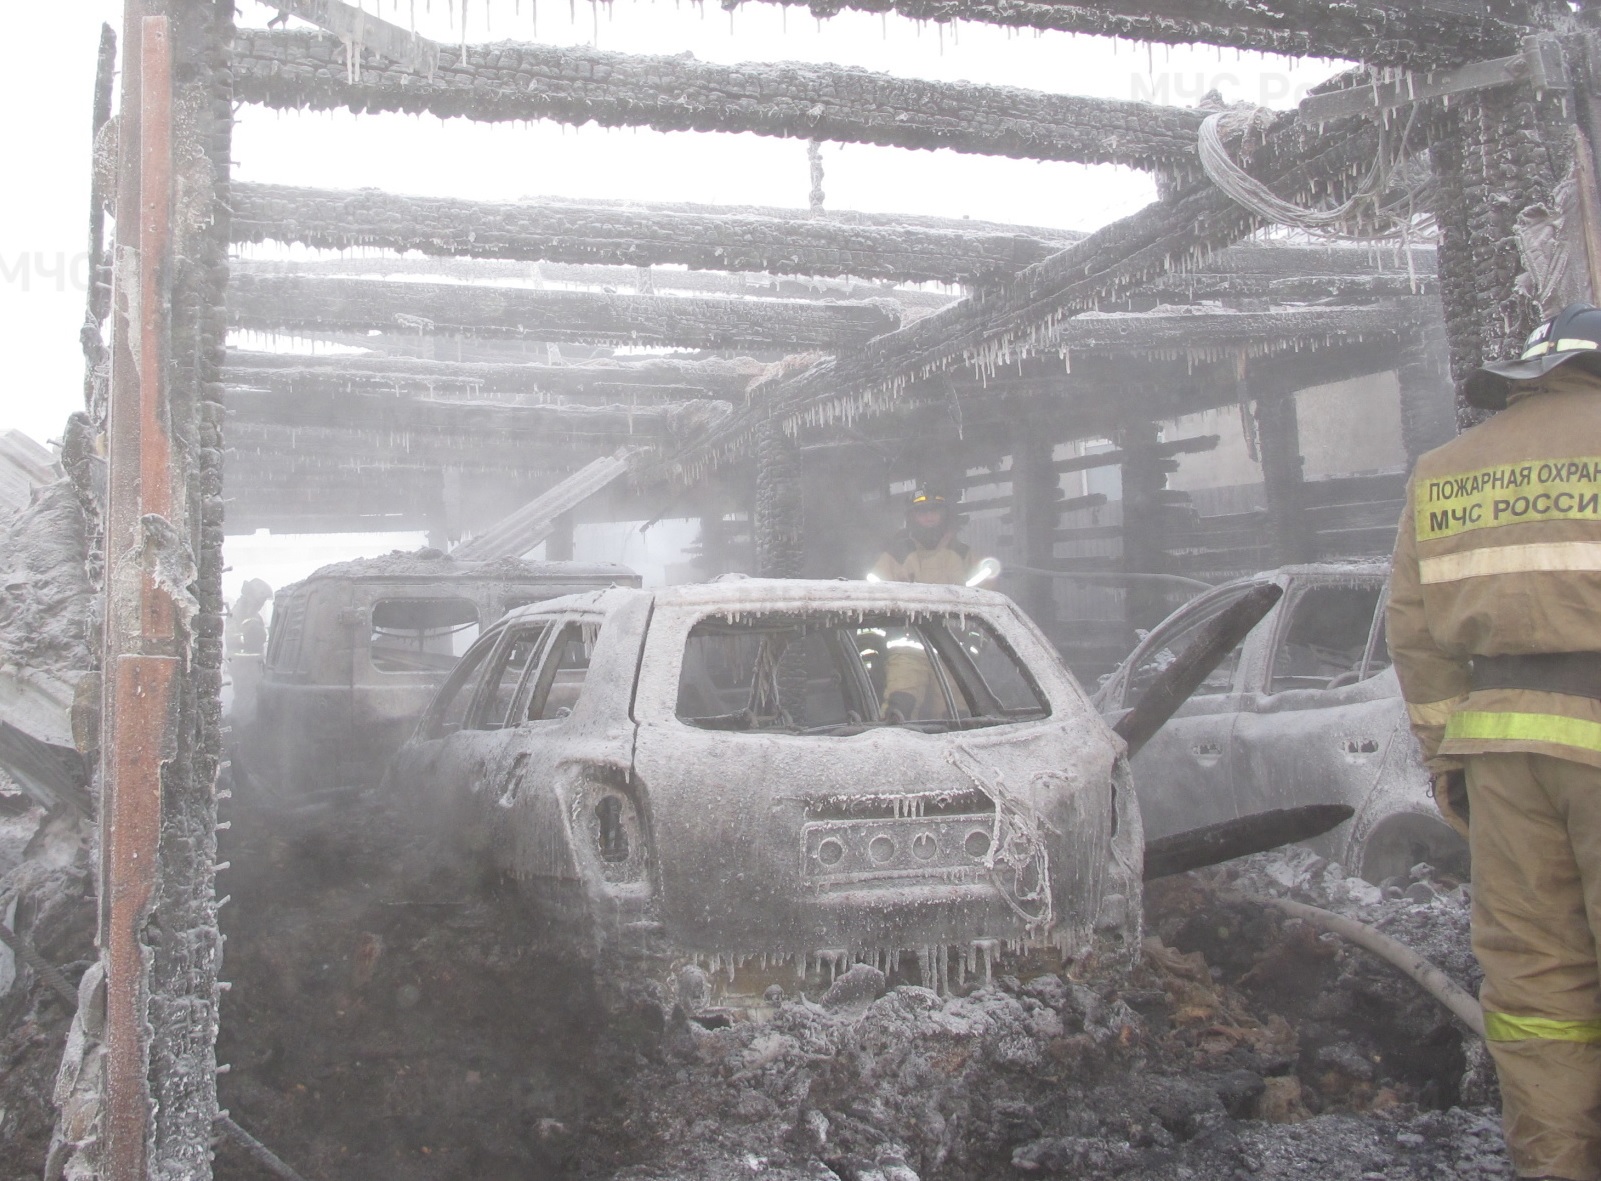 Частный дом и гараж с машинами сгорели в Усть-Алданском районе Якутии